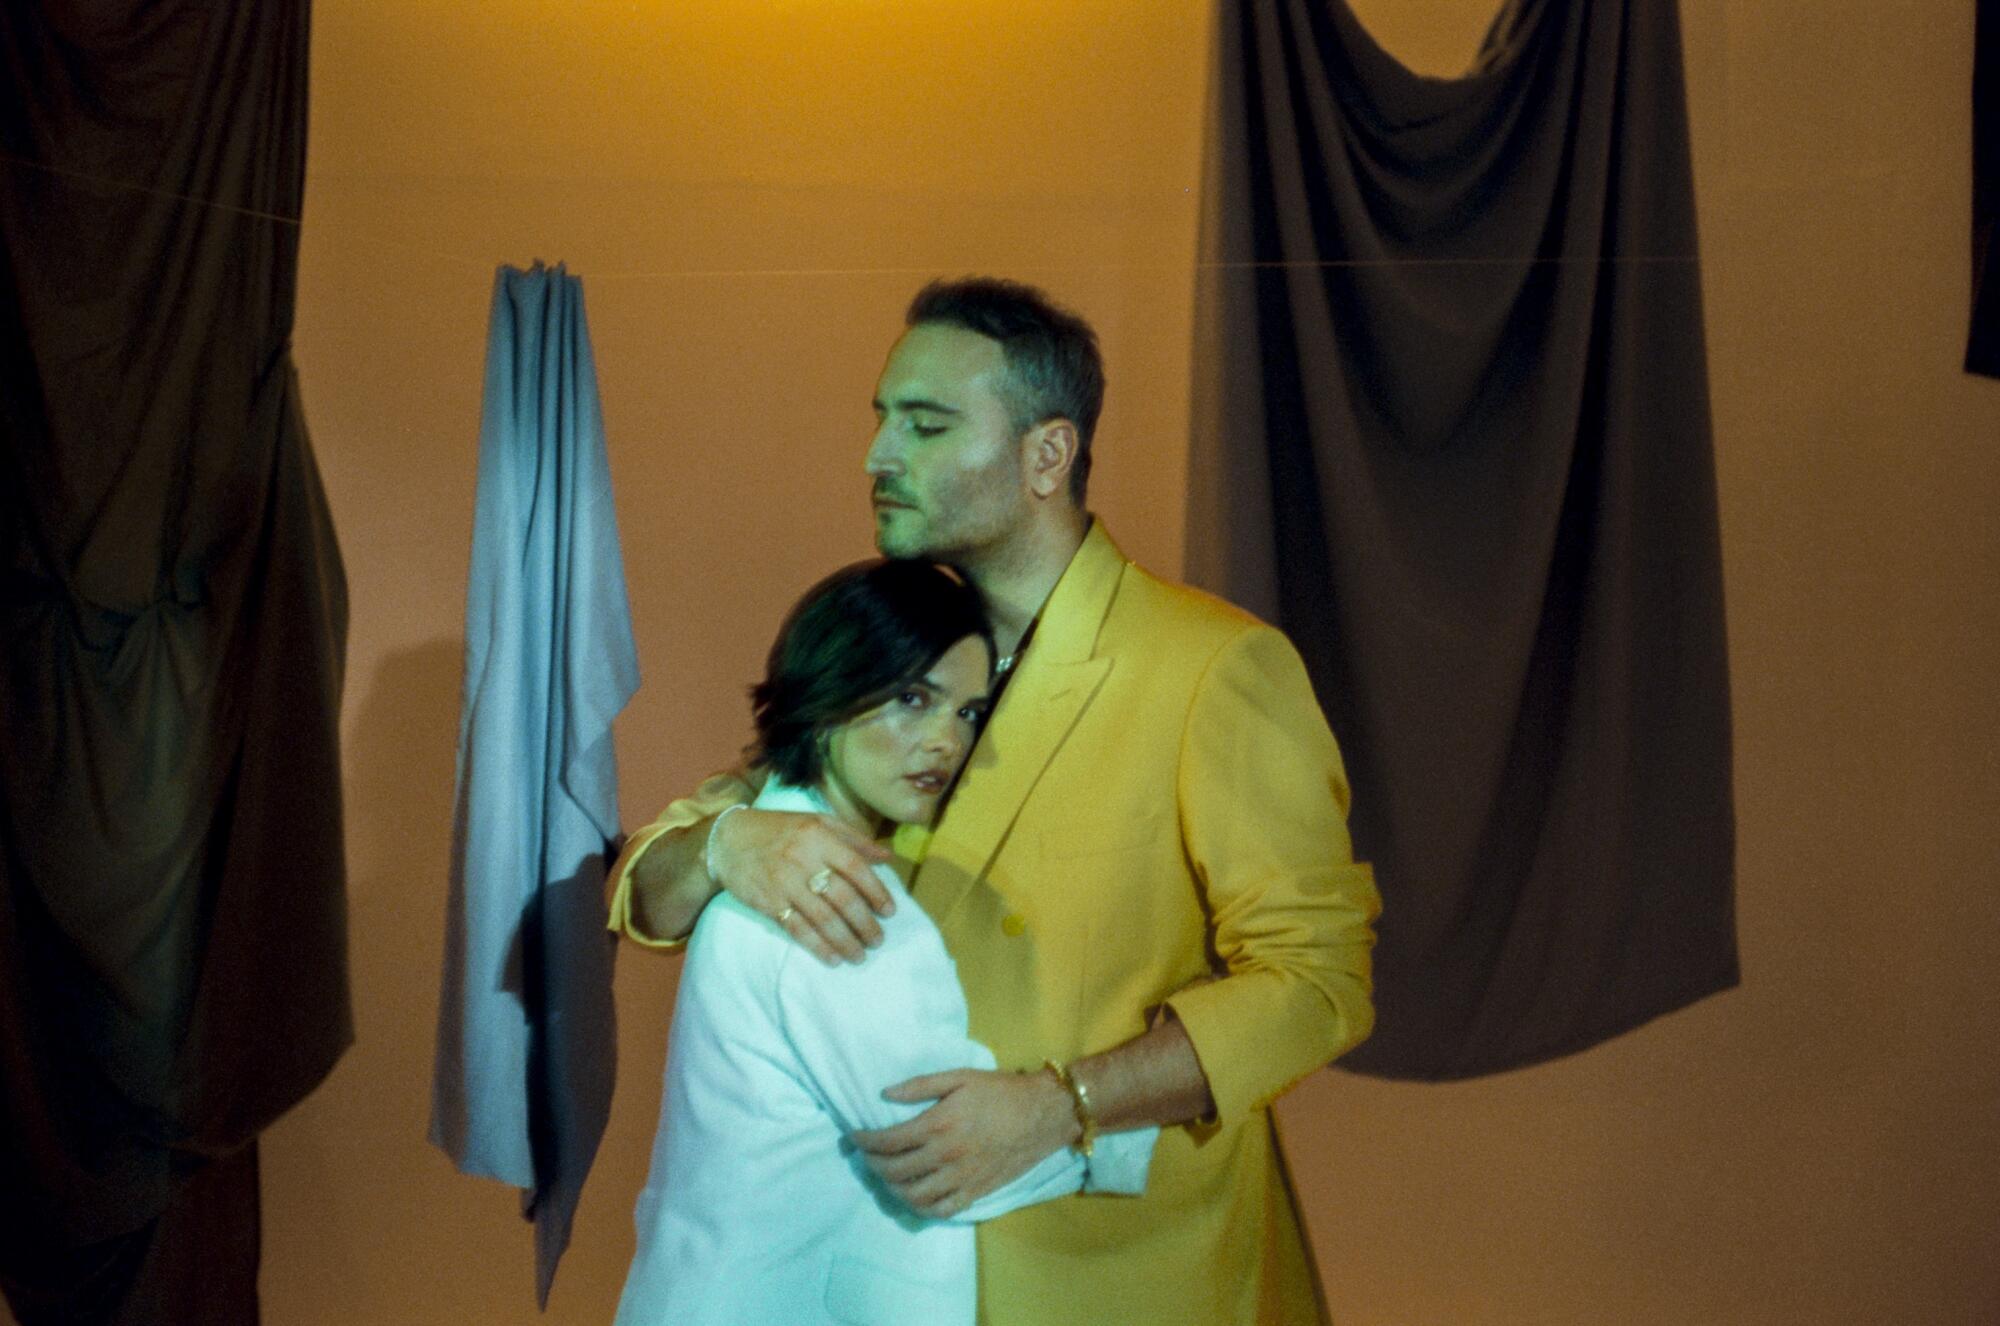 Paula y jesús durante el rodaje del video de "Déjame llorarte".